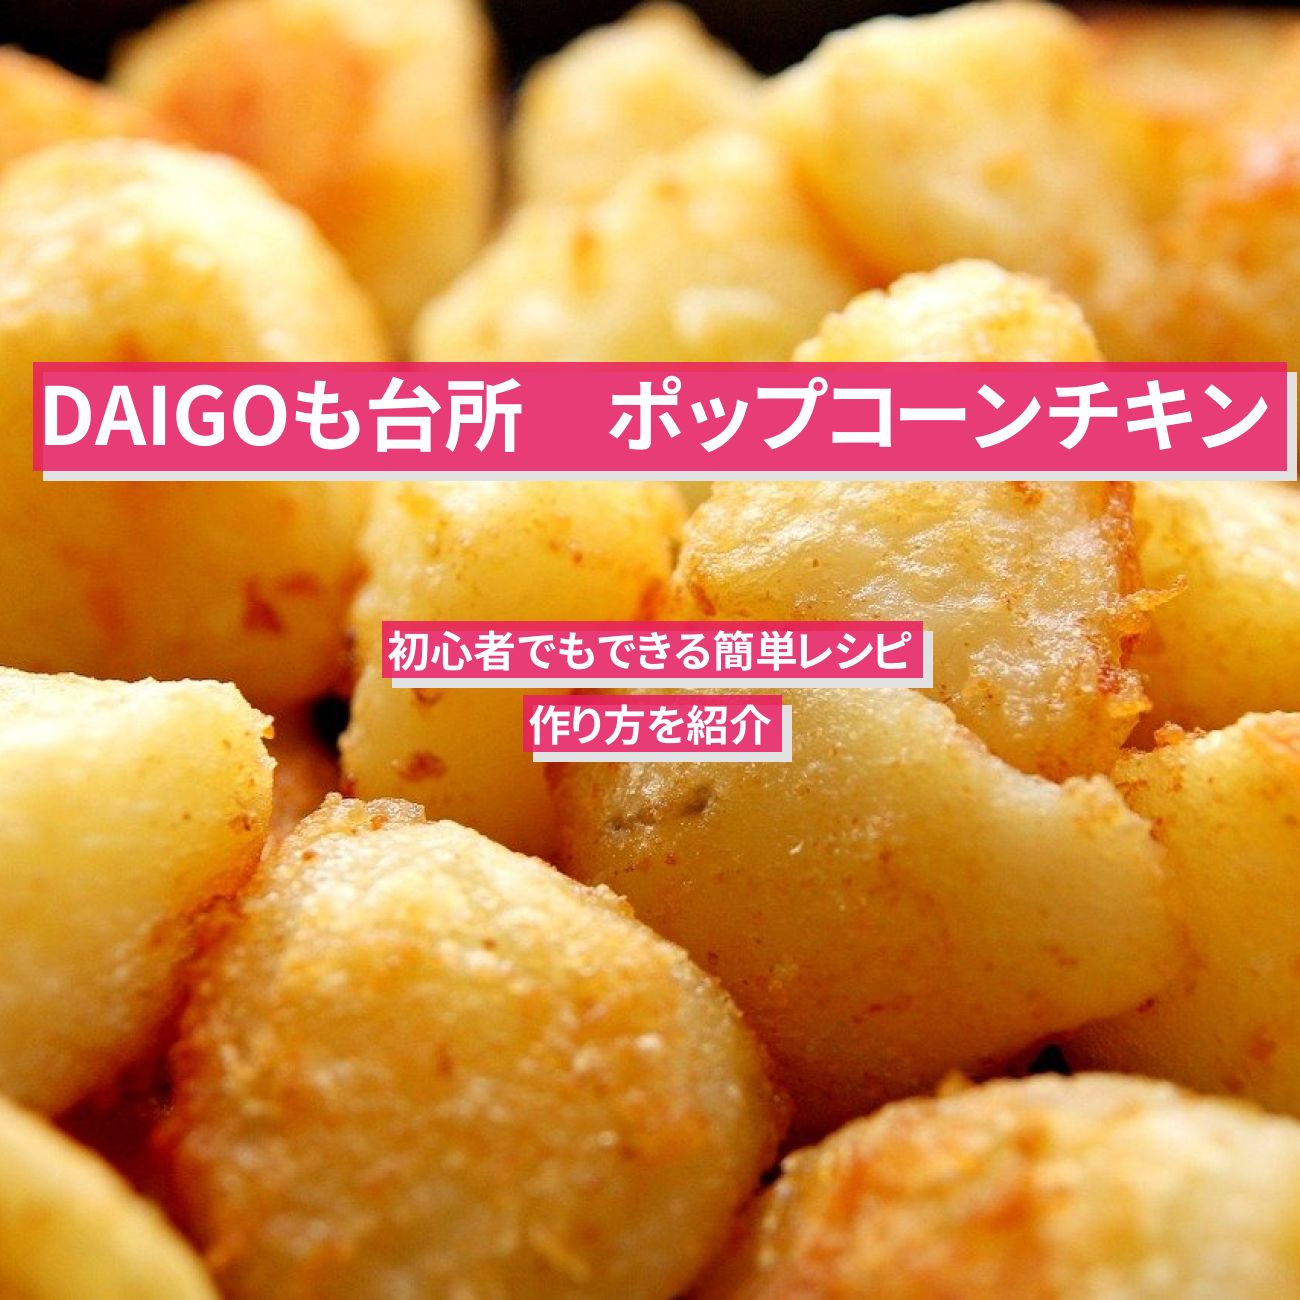 【DAIGOも台所】鶏むね肉で『ポップコーンチキン』山本ゆり先生のレシピ・作り方を紹介